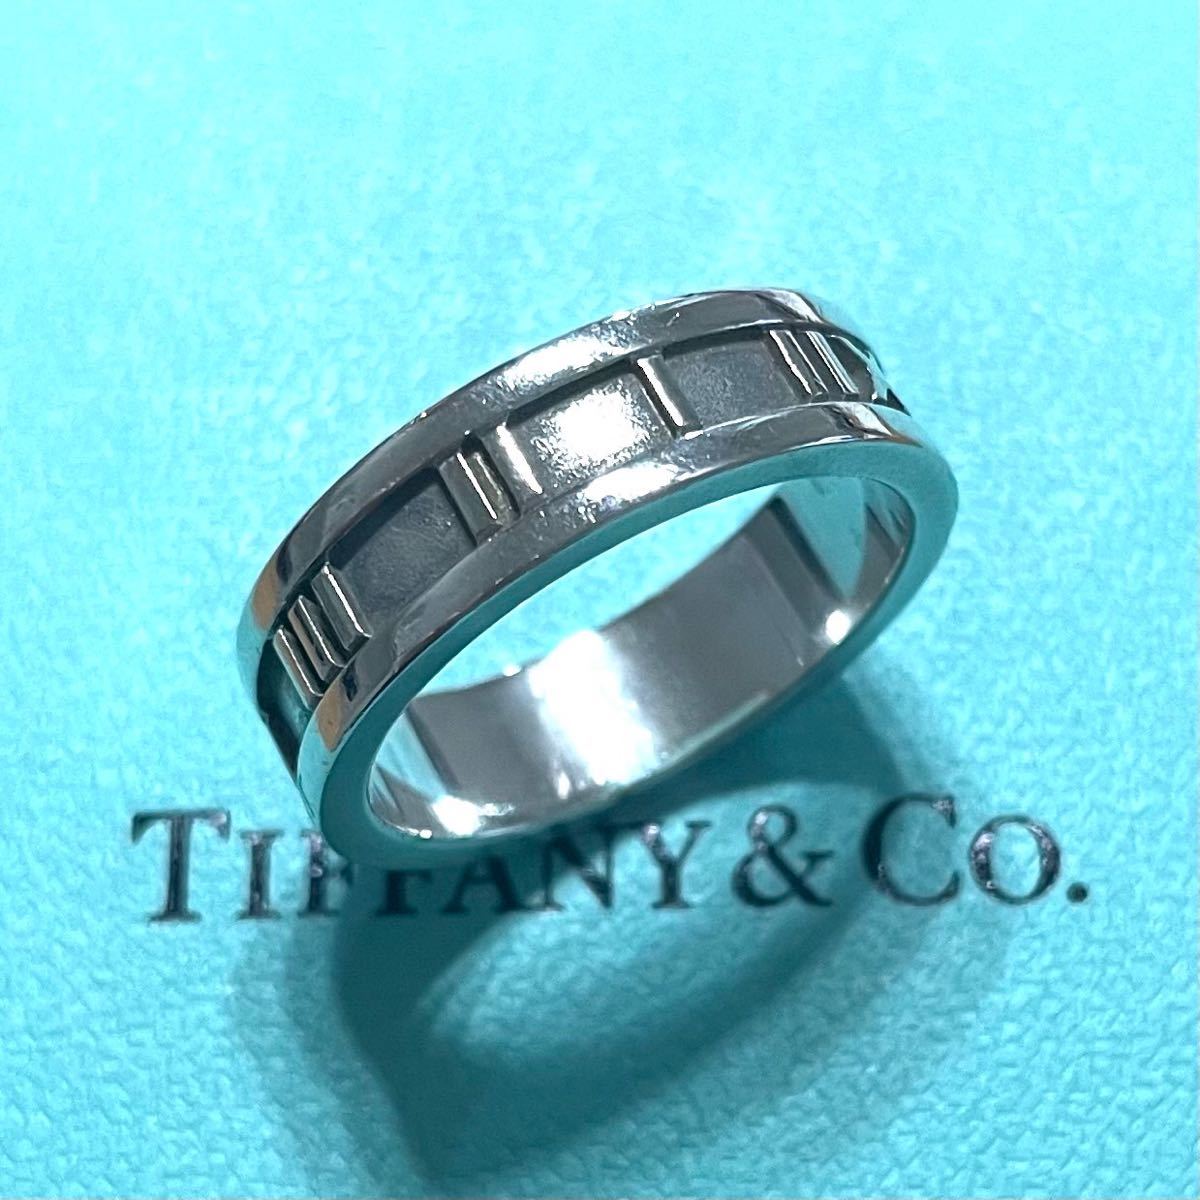 SALE／92%OFF】 Tiffany Co. アトラス リング 指輪 22号 スターリング